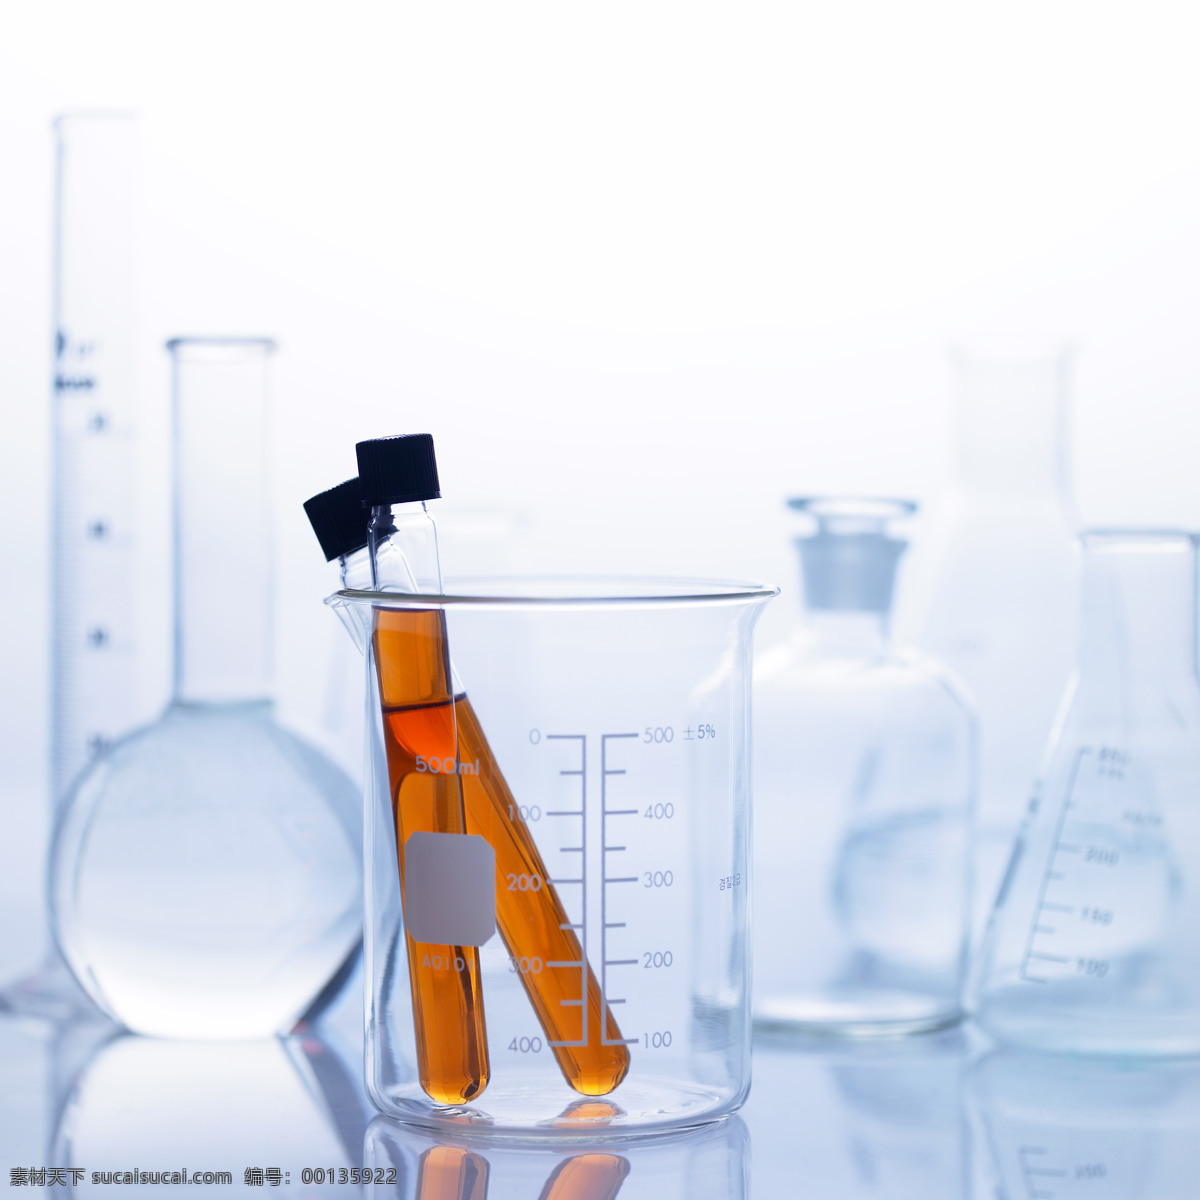 化学 用品 容器 玻璃瓶 瓶子 科学 化学用品 研究 科技 科技图片 现代科技